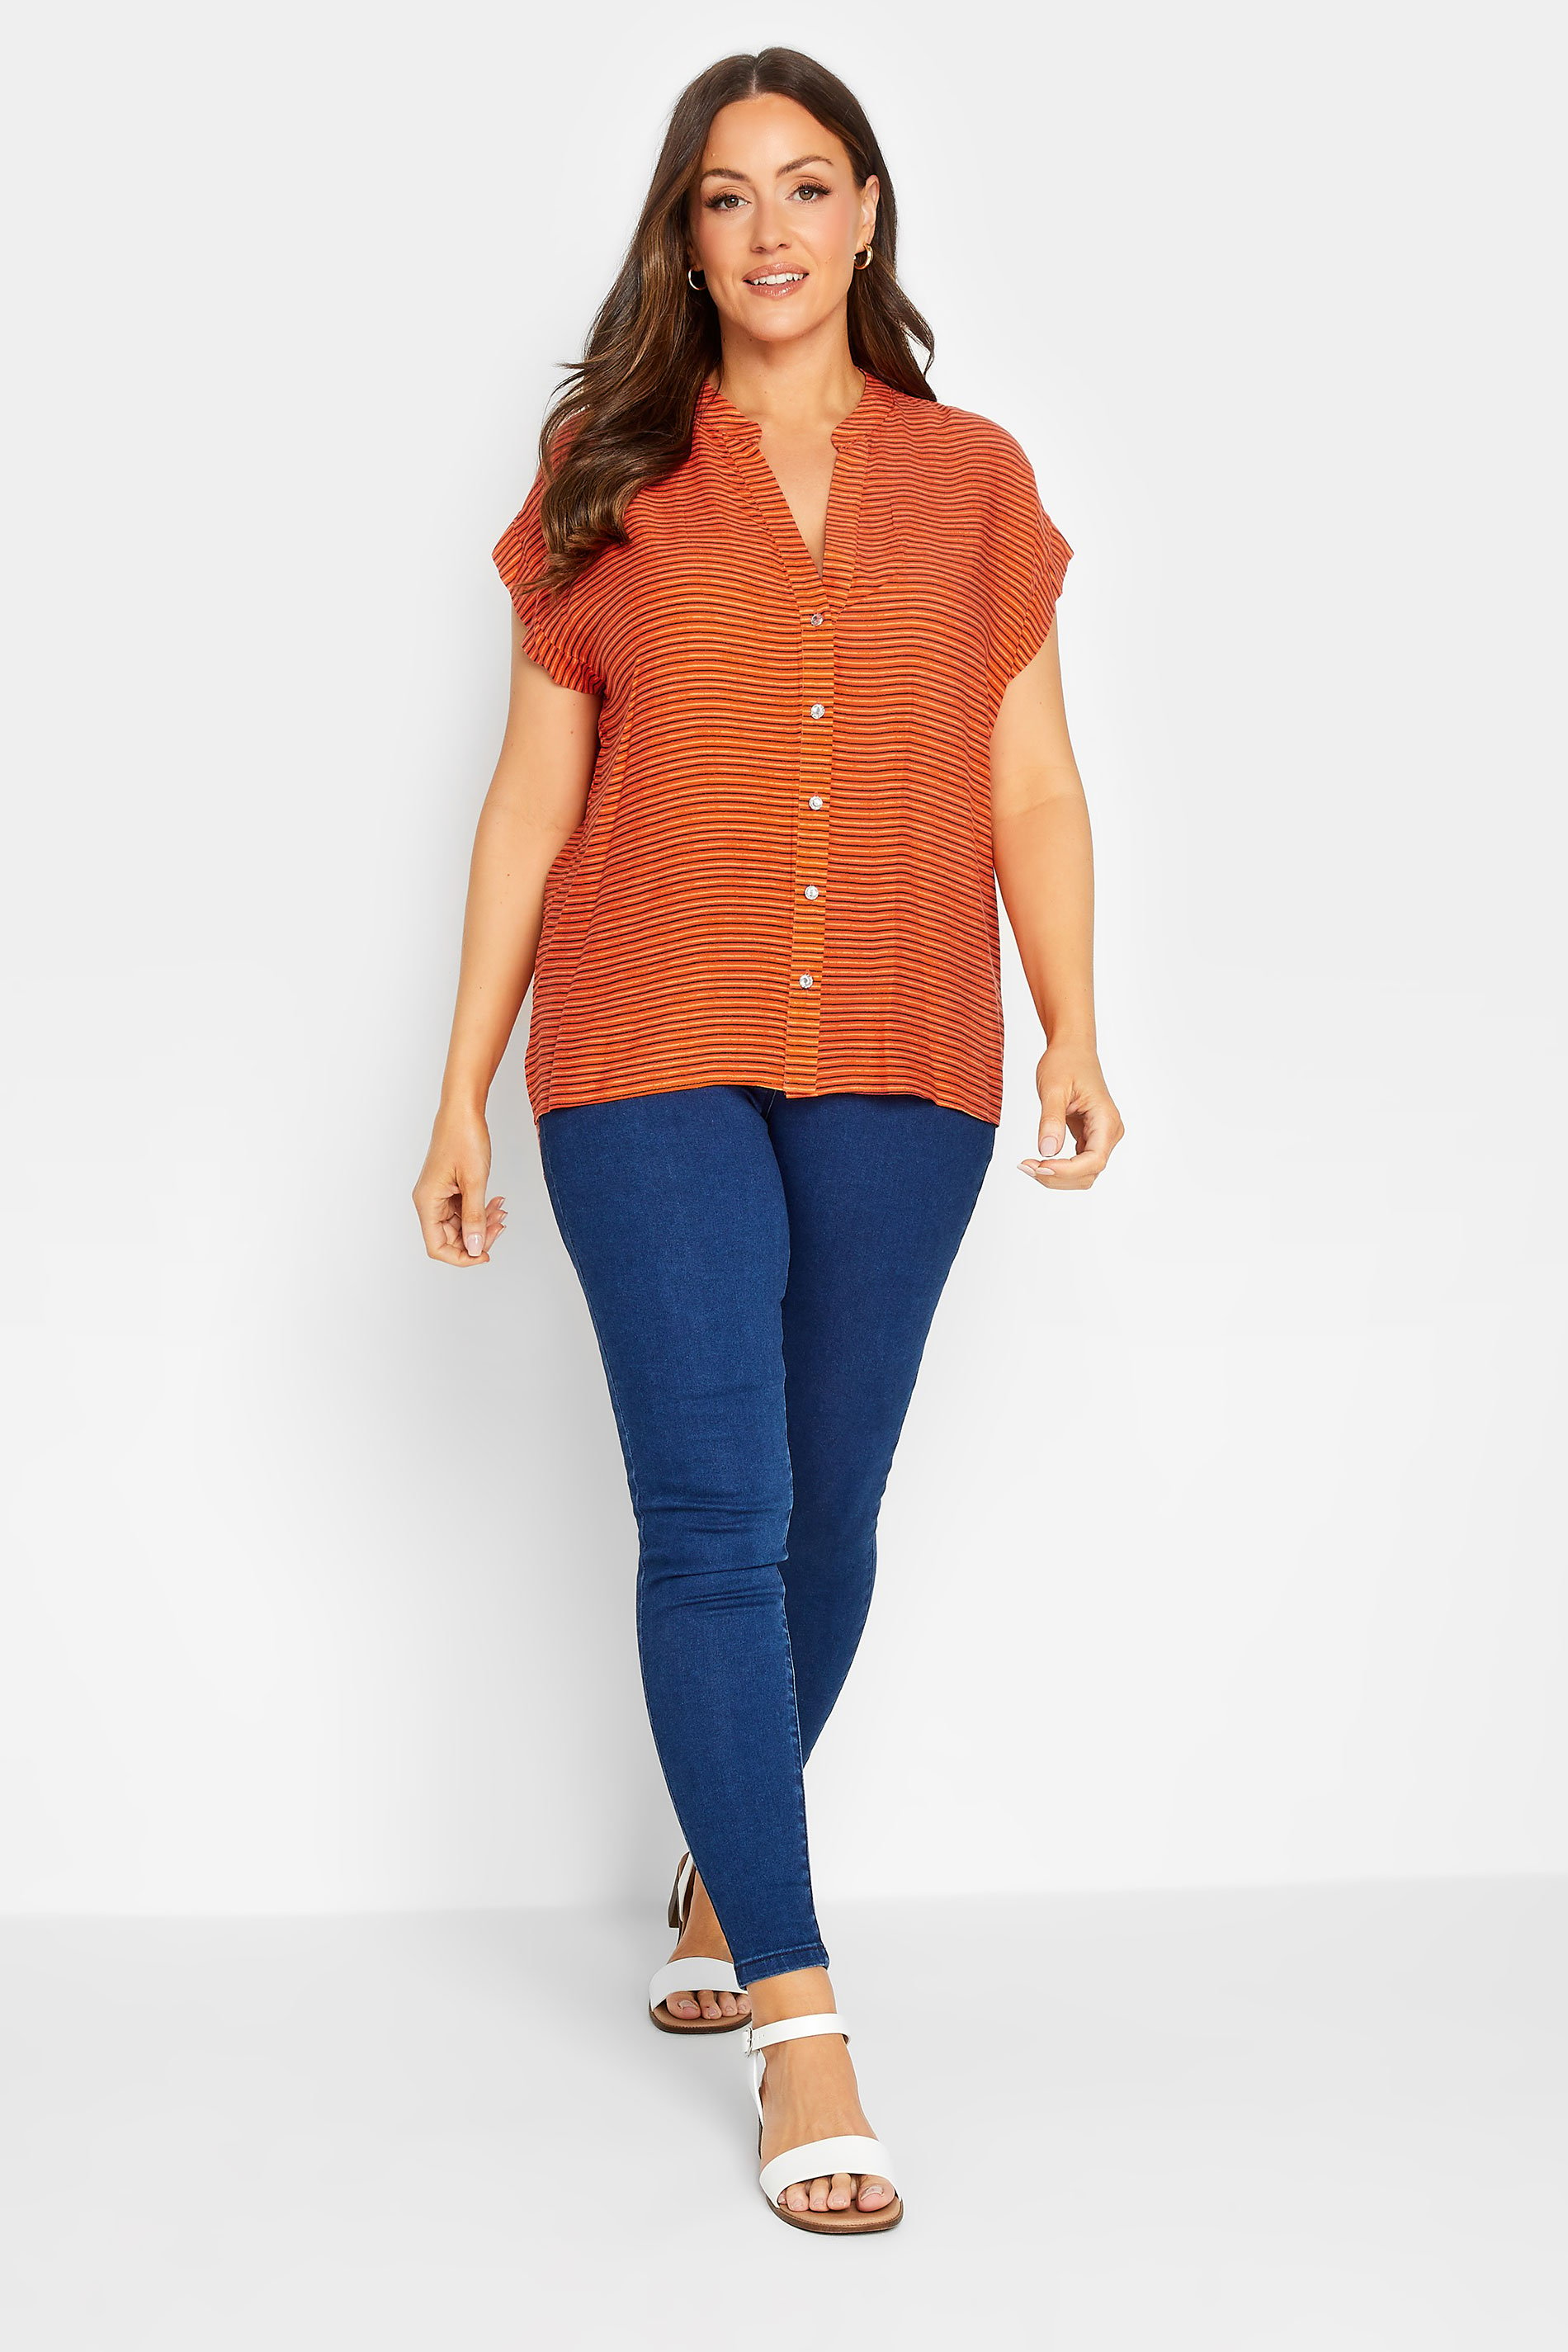 M&Co Women's Orange Stripe Grown On Sleeve Top | M&Co 2